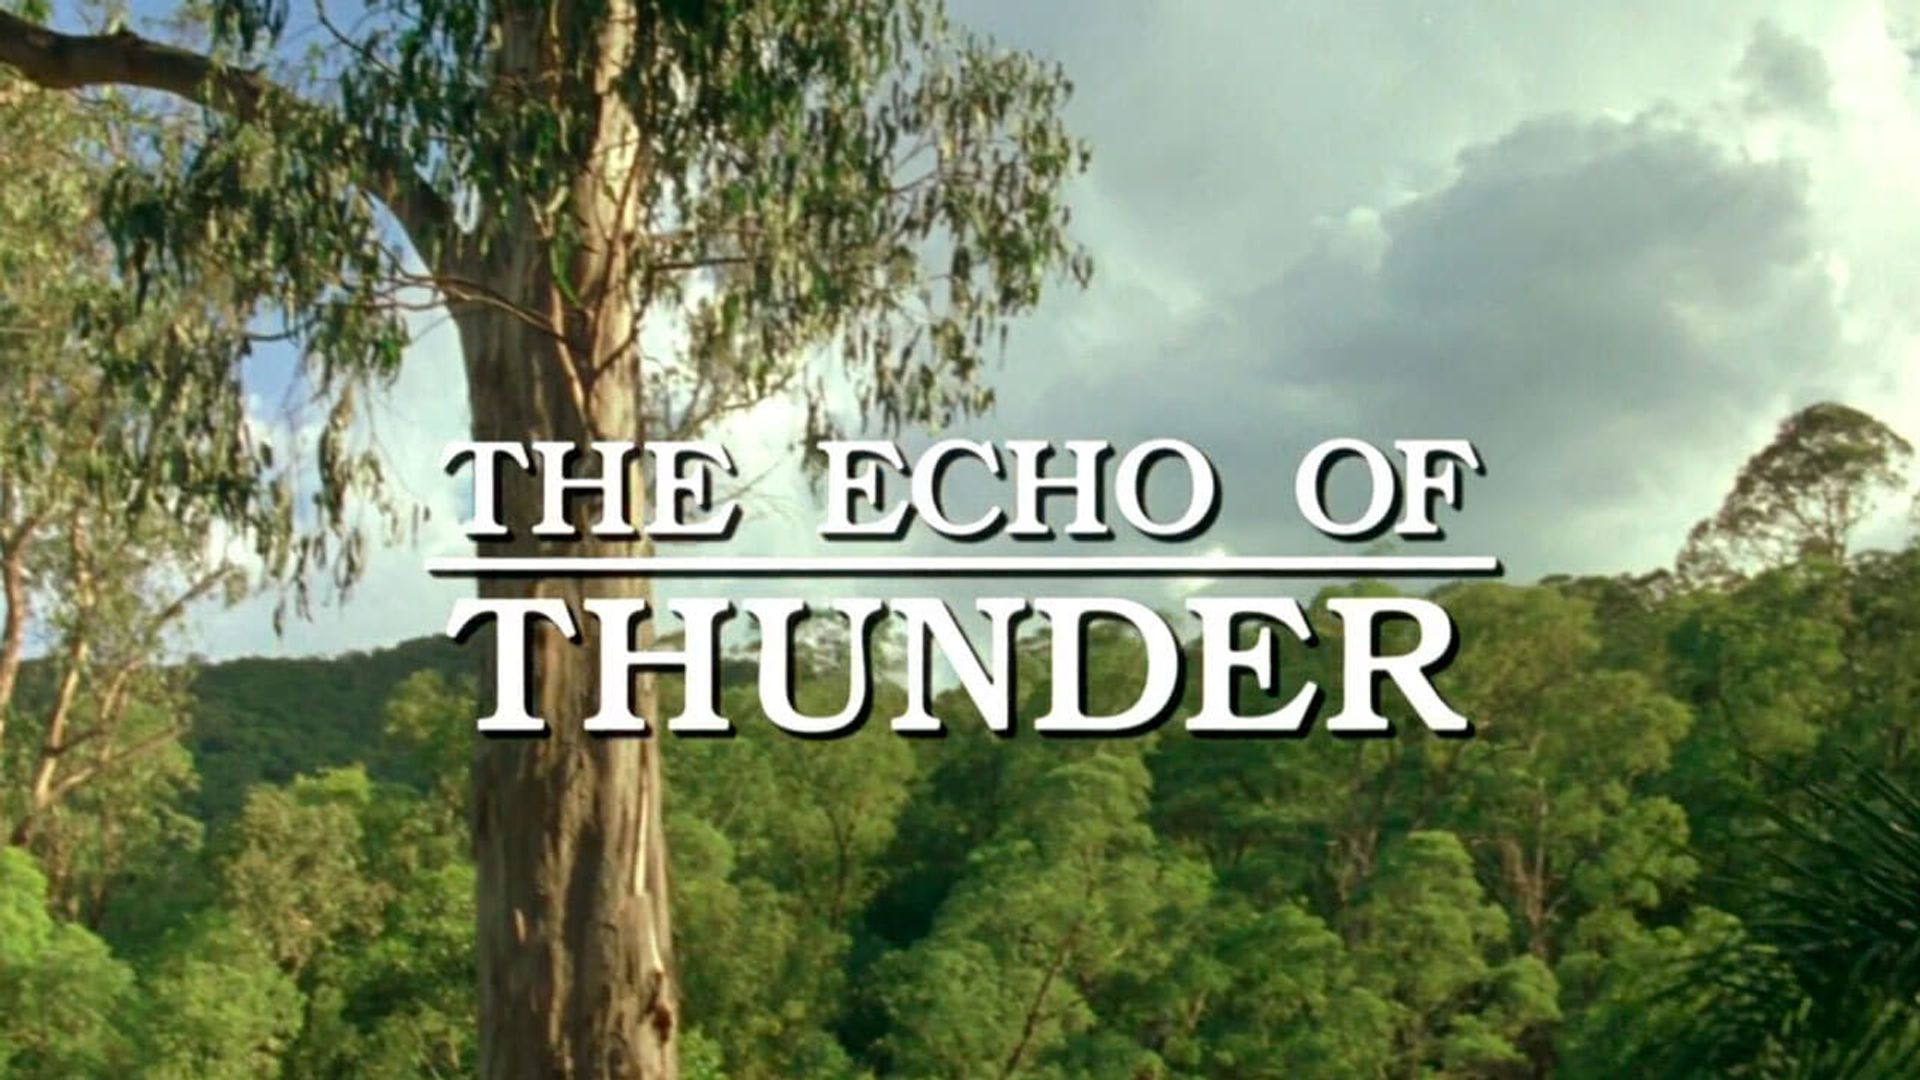 The Echo of Thunder background